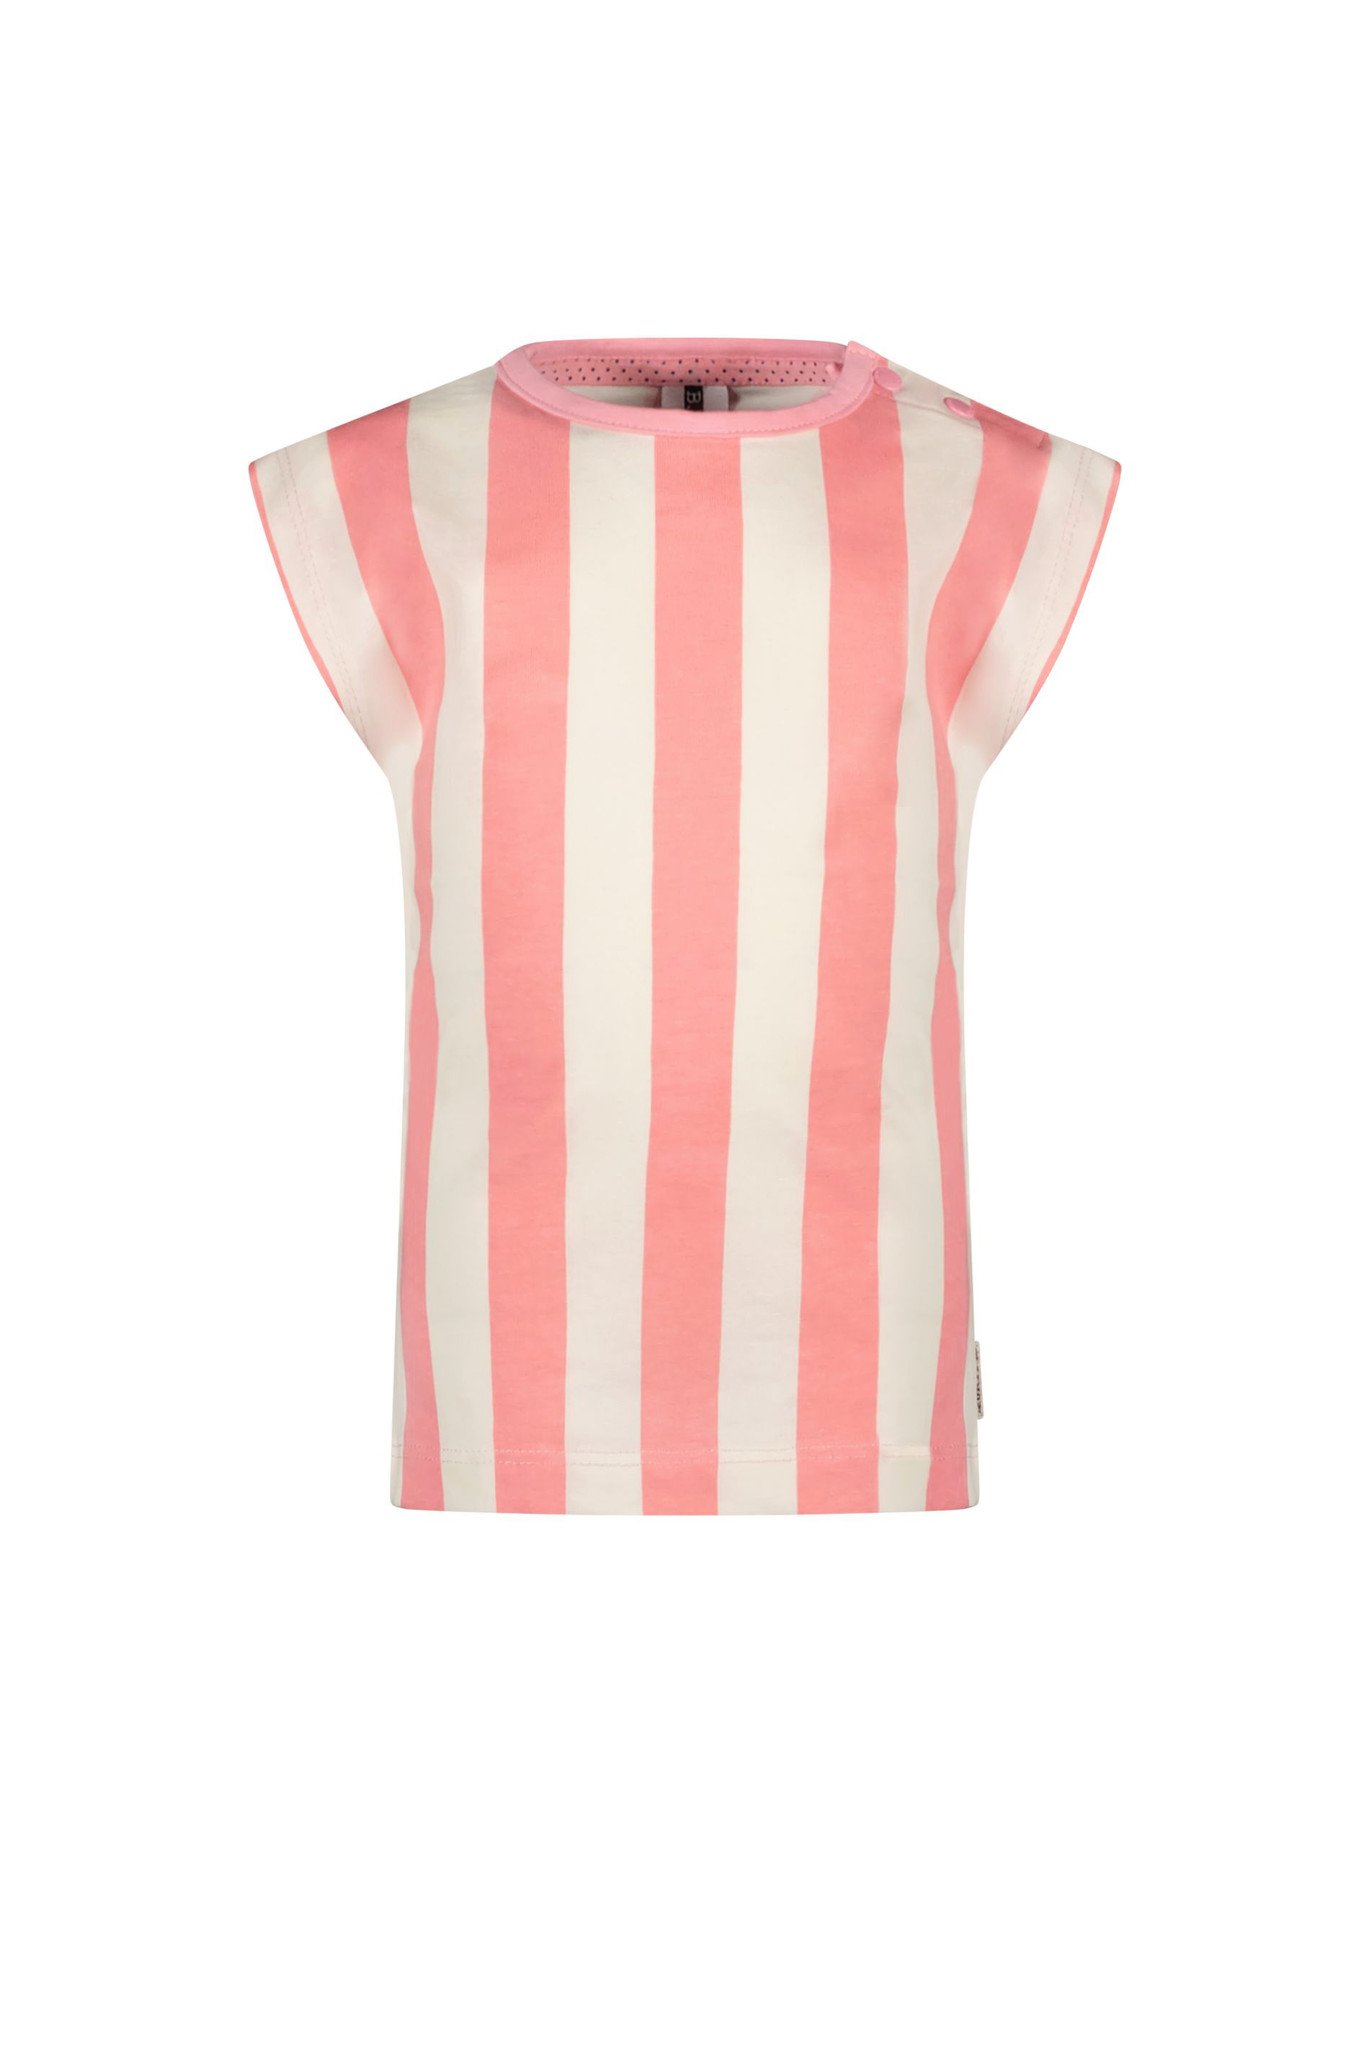 B.Nosy B.Nosy | T-shirt Stripes - Happy Stripe